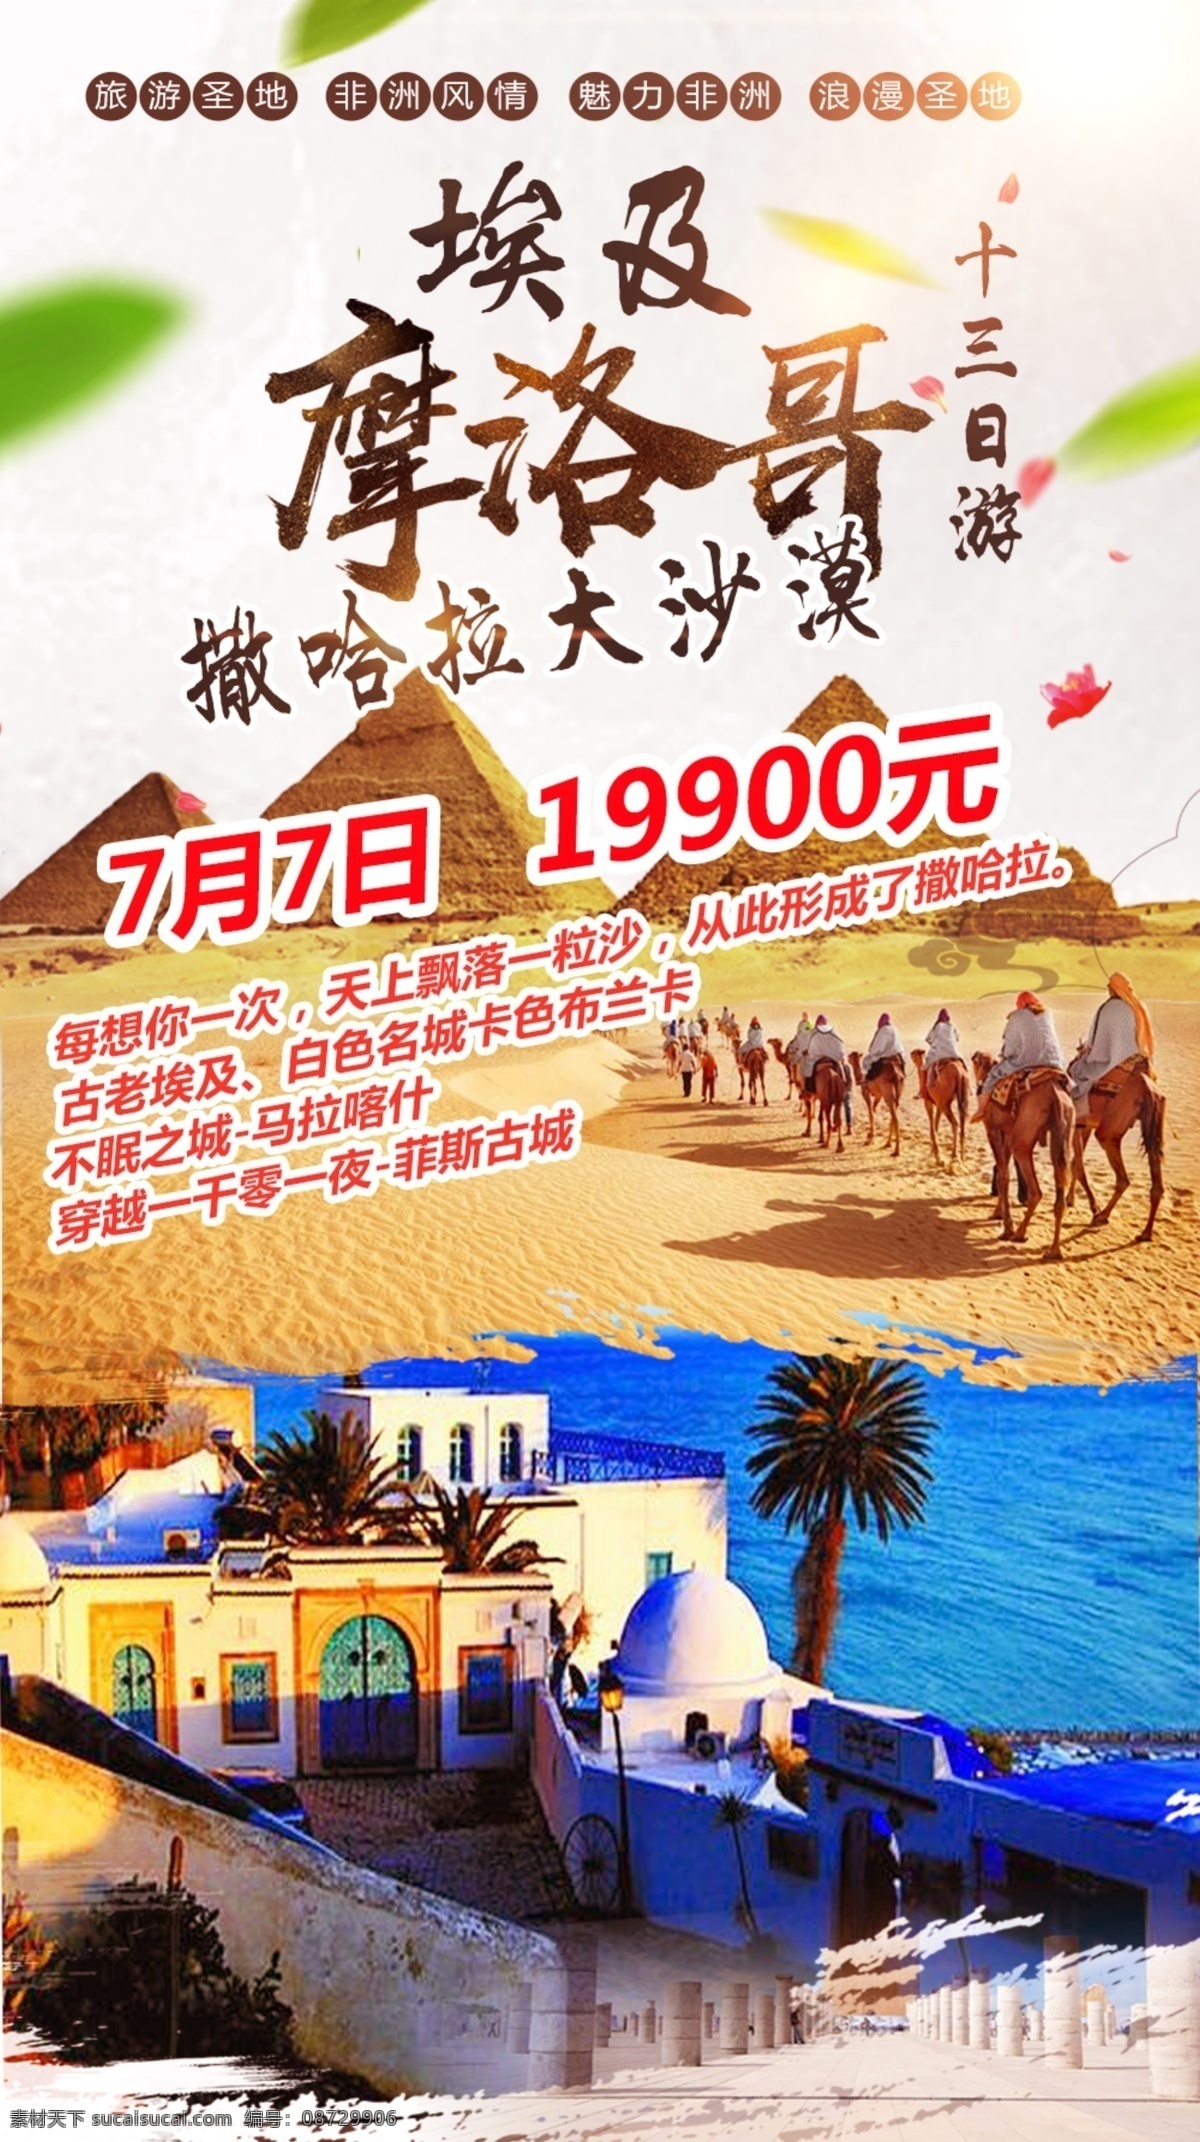 摩洛哥 旅游 海报 埃及旅游 撒哈拉旅游 沙漠旅游 北非旅游